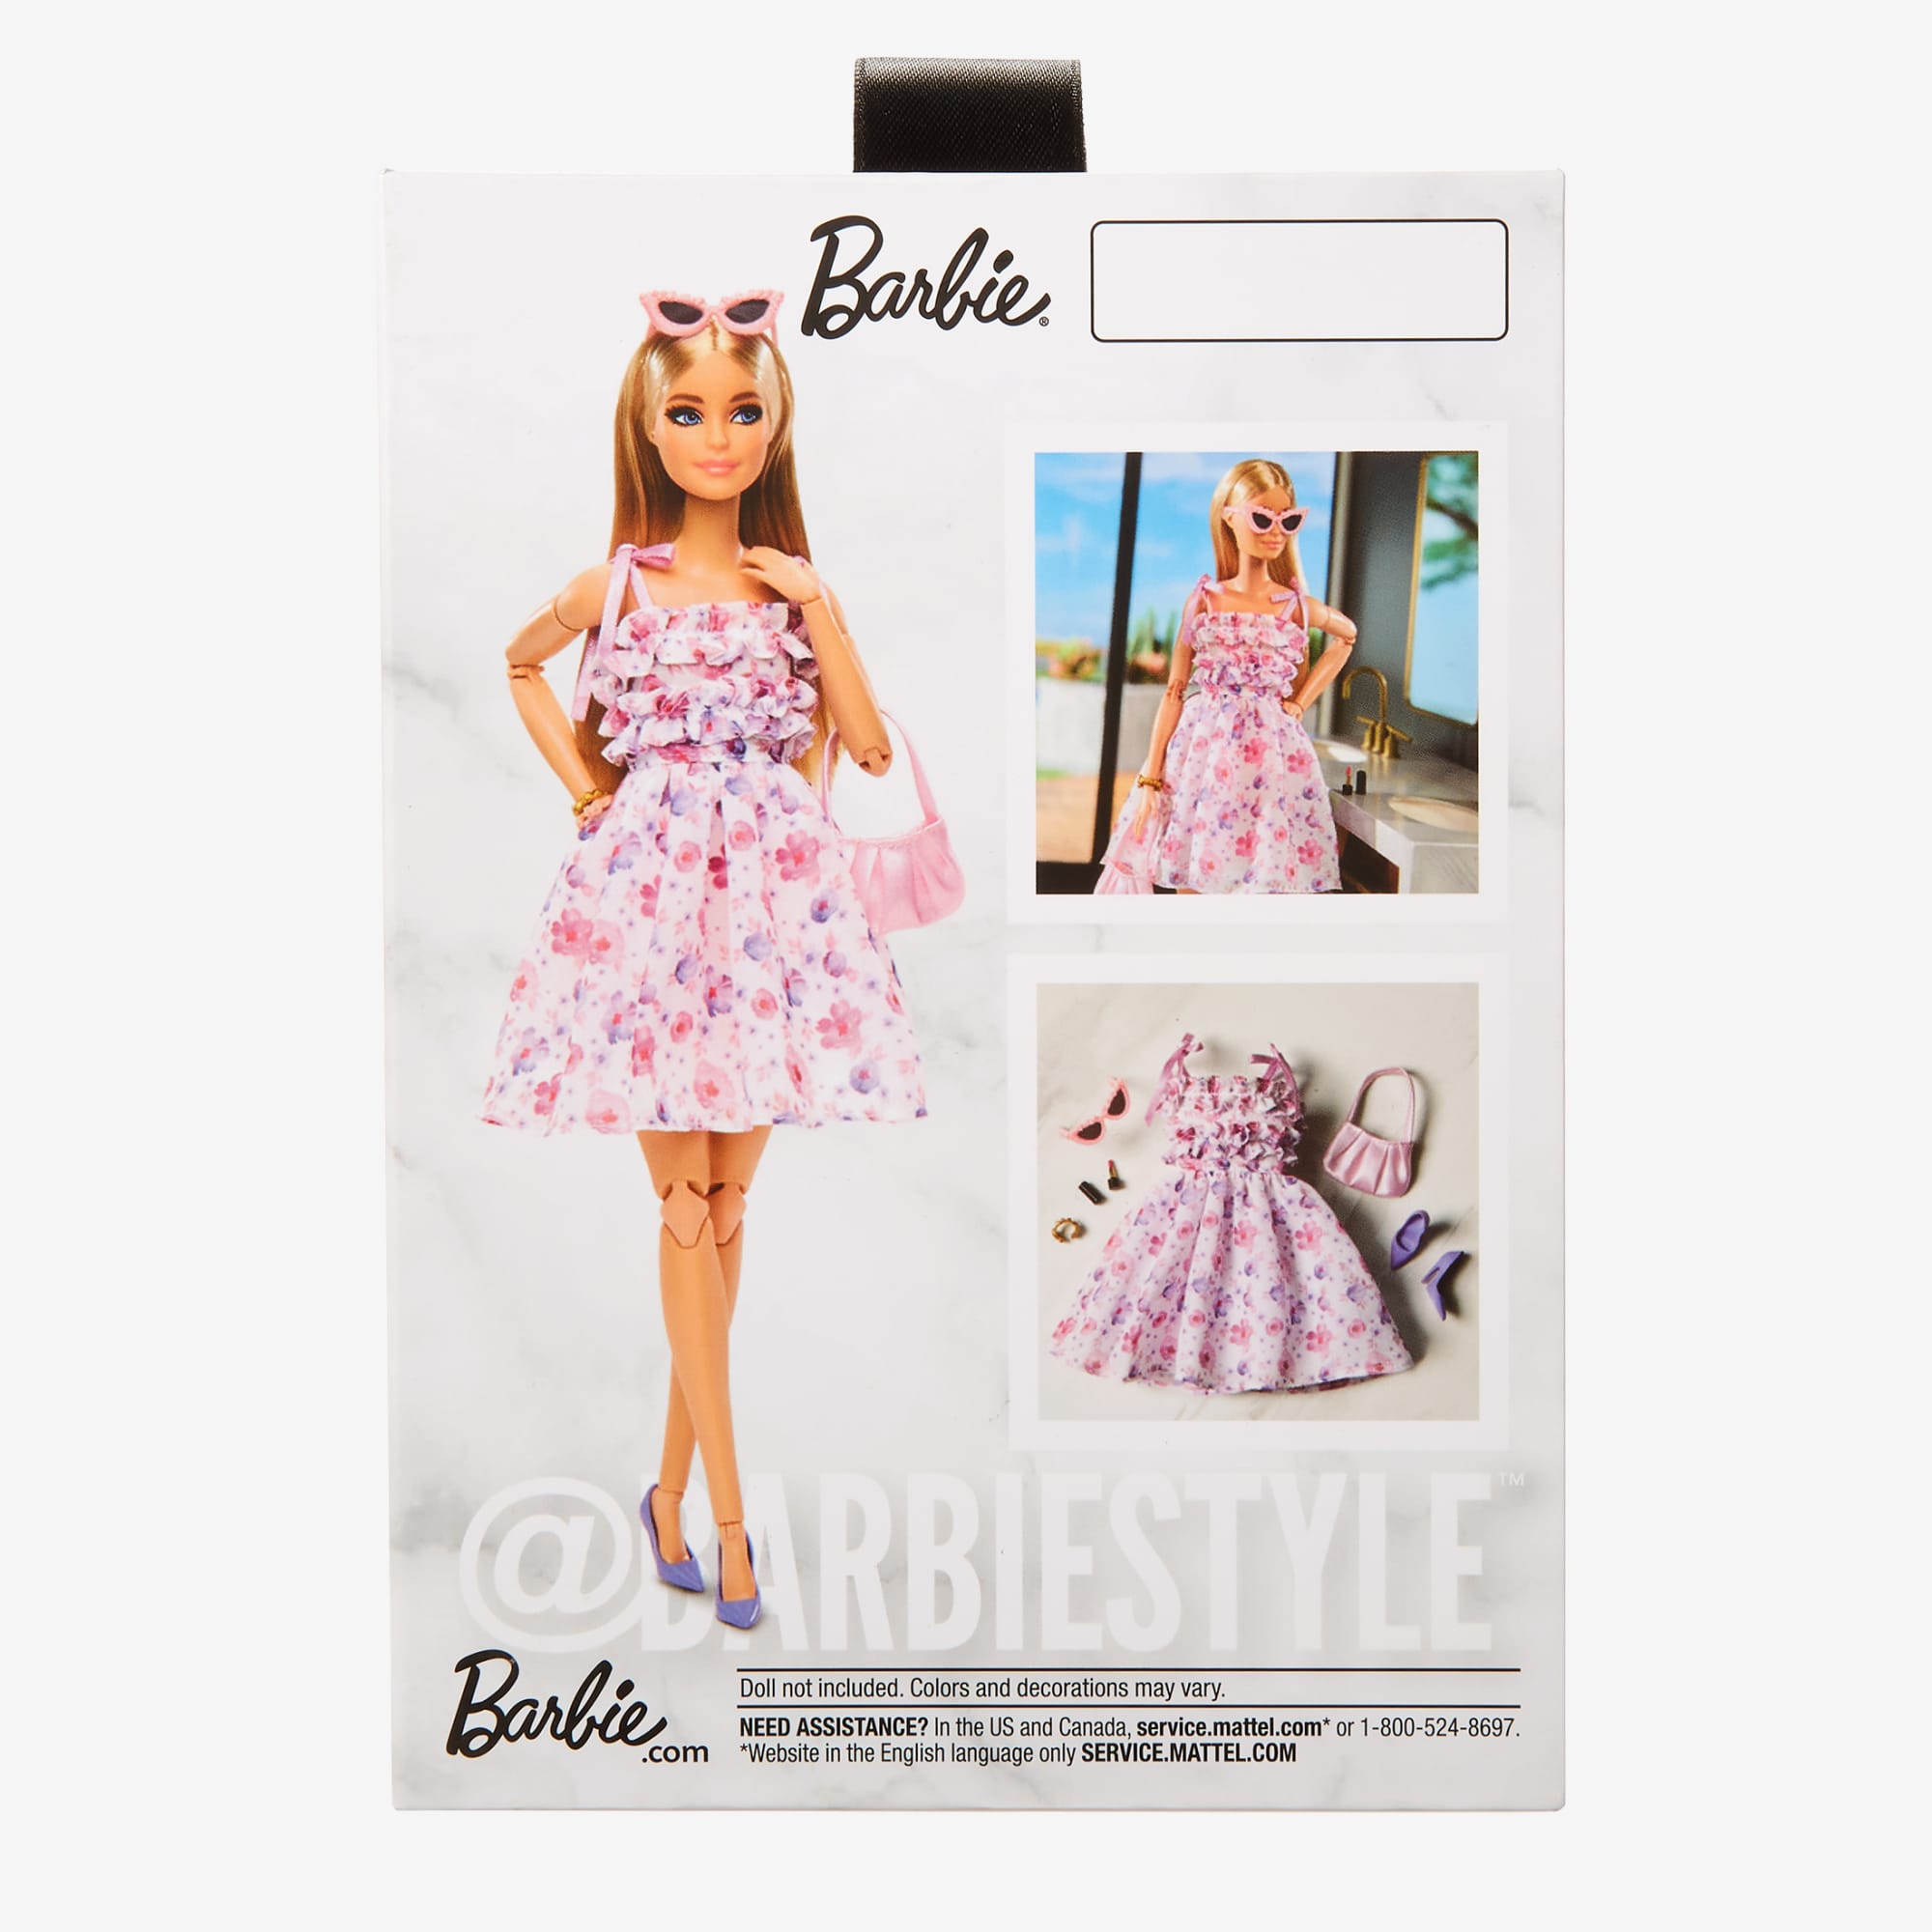 Hecho un desastre apagado Árbol genealógico BarbieStyle Fashion Pack – Spring Date – Mattel Creations